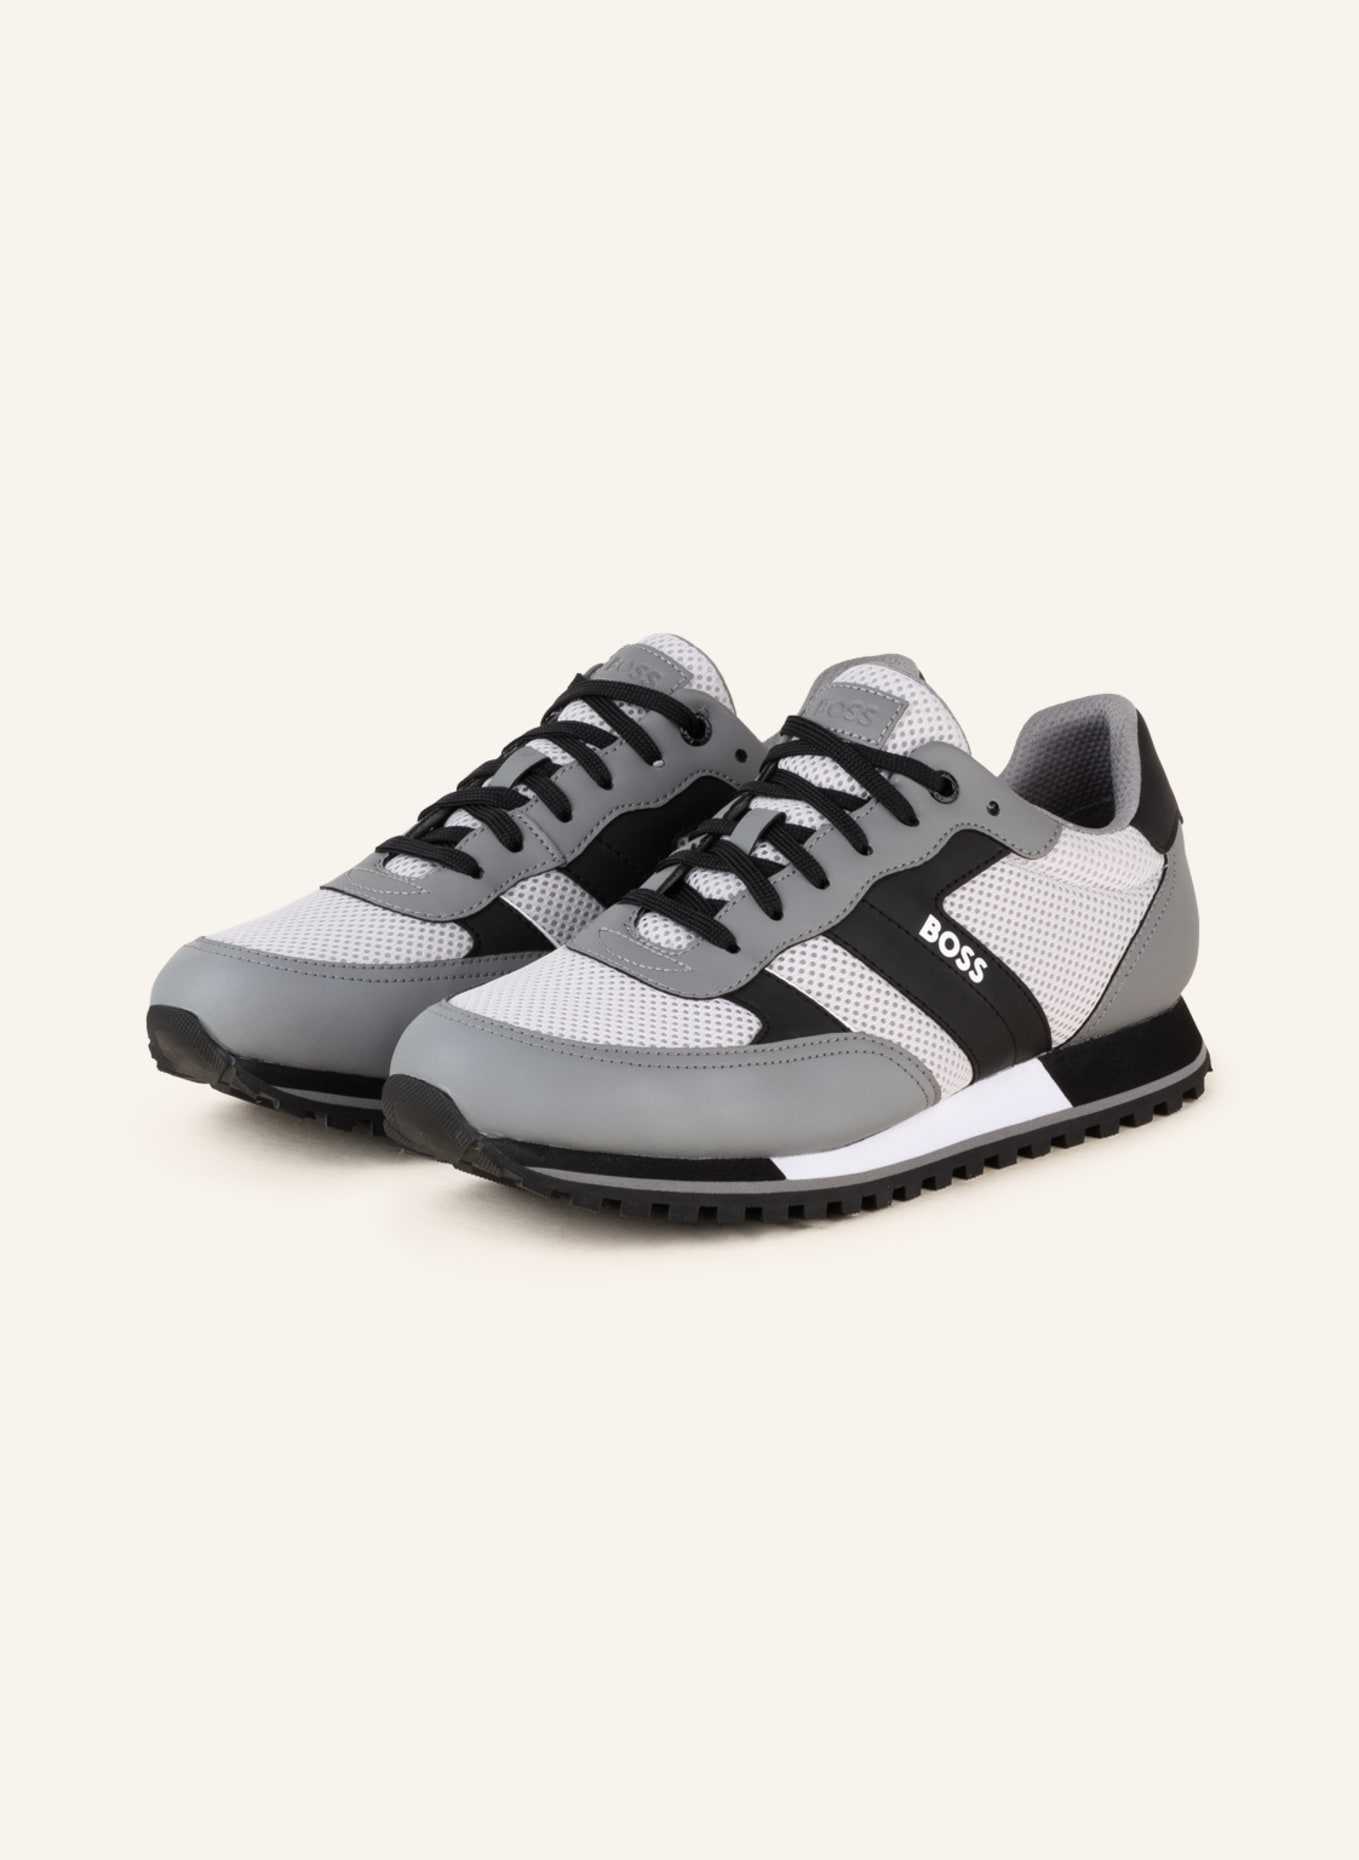 BOSS Sneakers PARKOUR in gray/ light gray/ black Breuninger